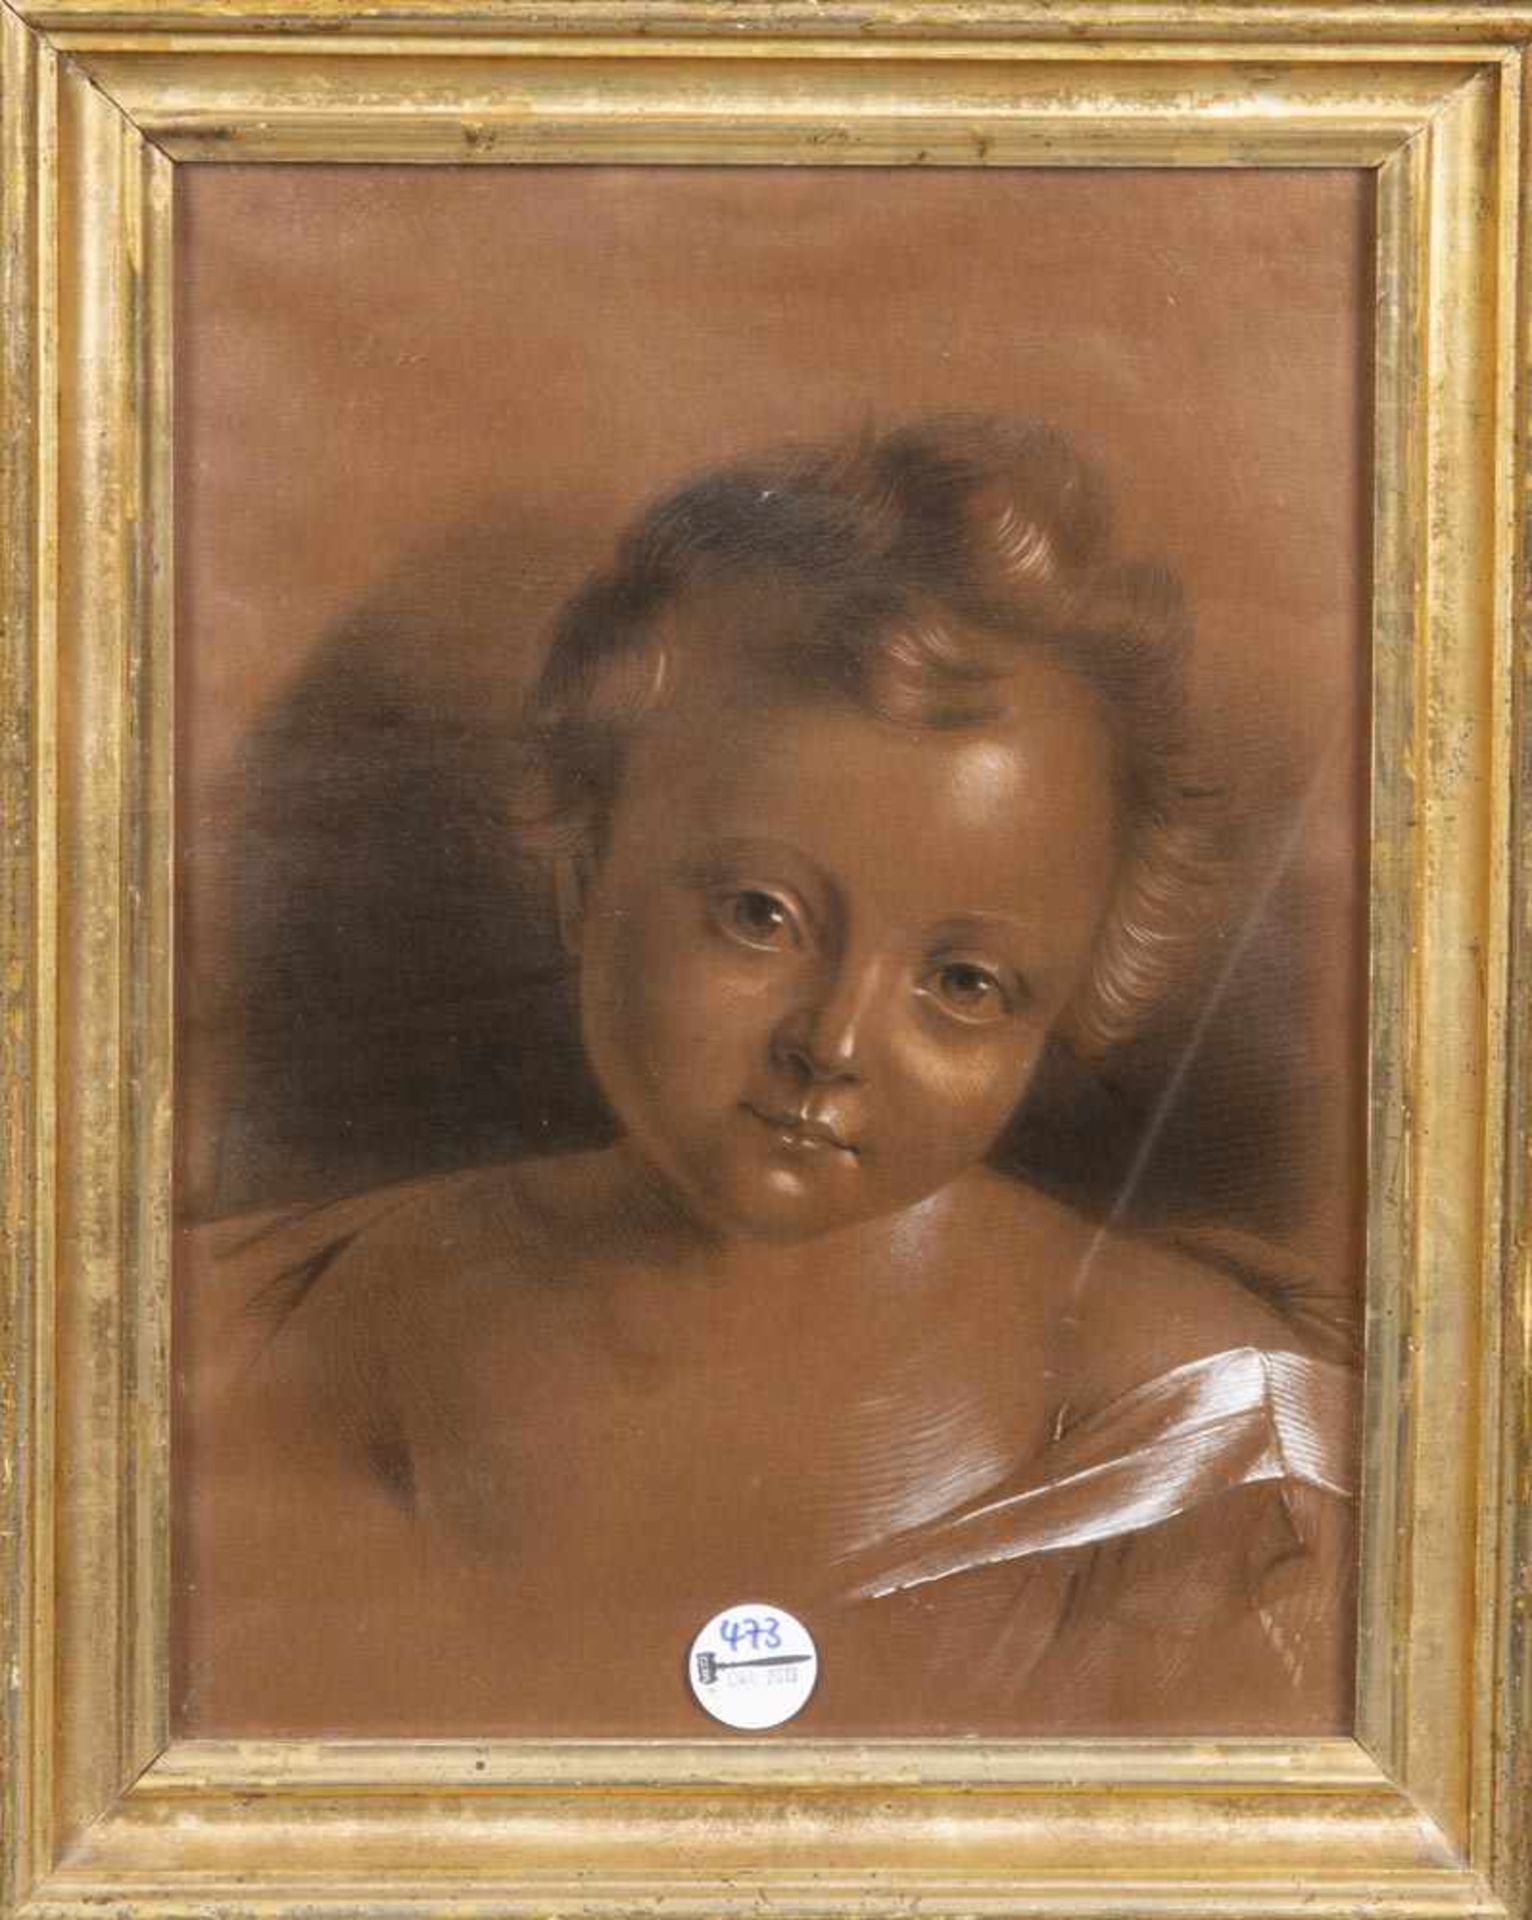 Maler des 19. Jhs. Kinderporträt. Kohlezeichnung, weiß gehöht, auf braunem Papier, hi./Gl./